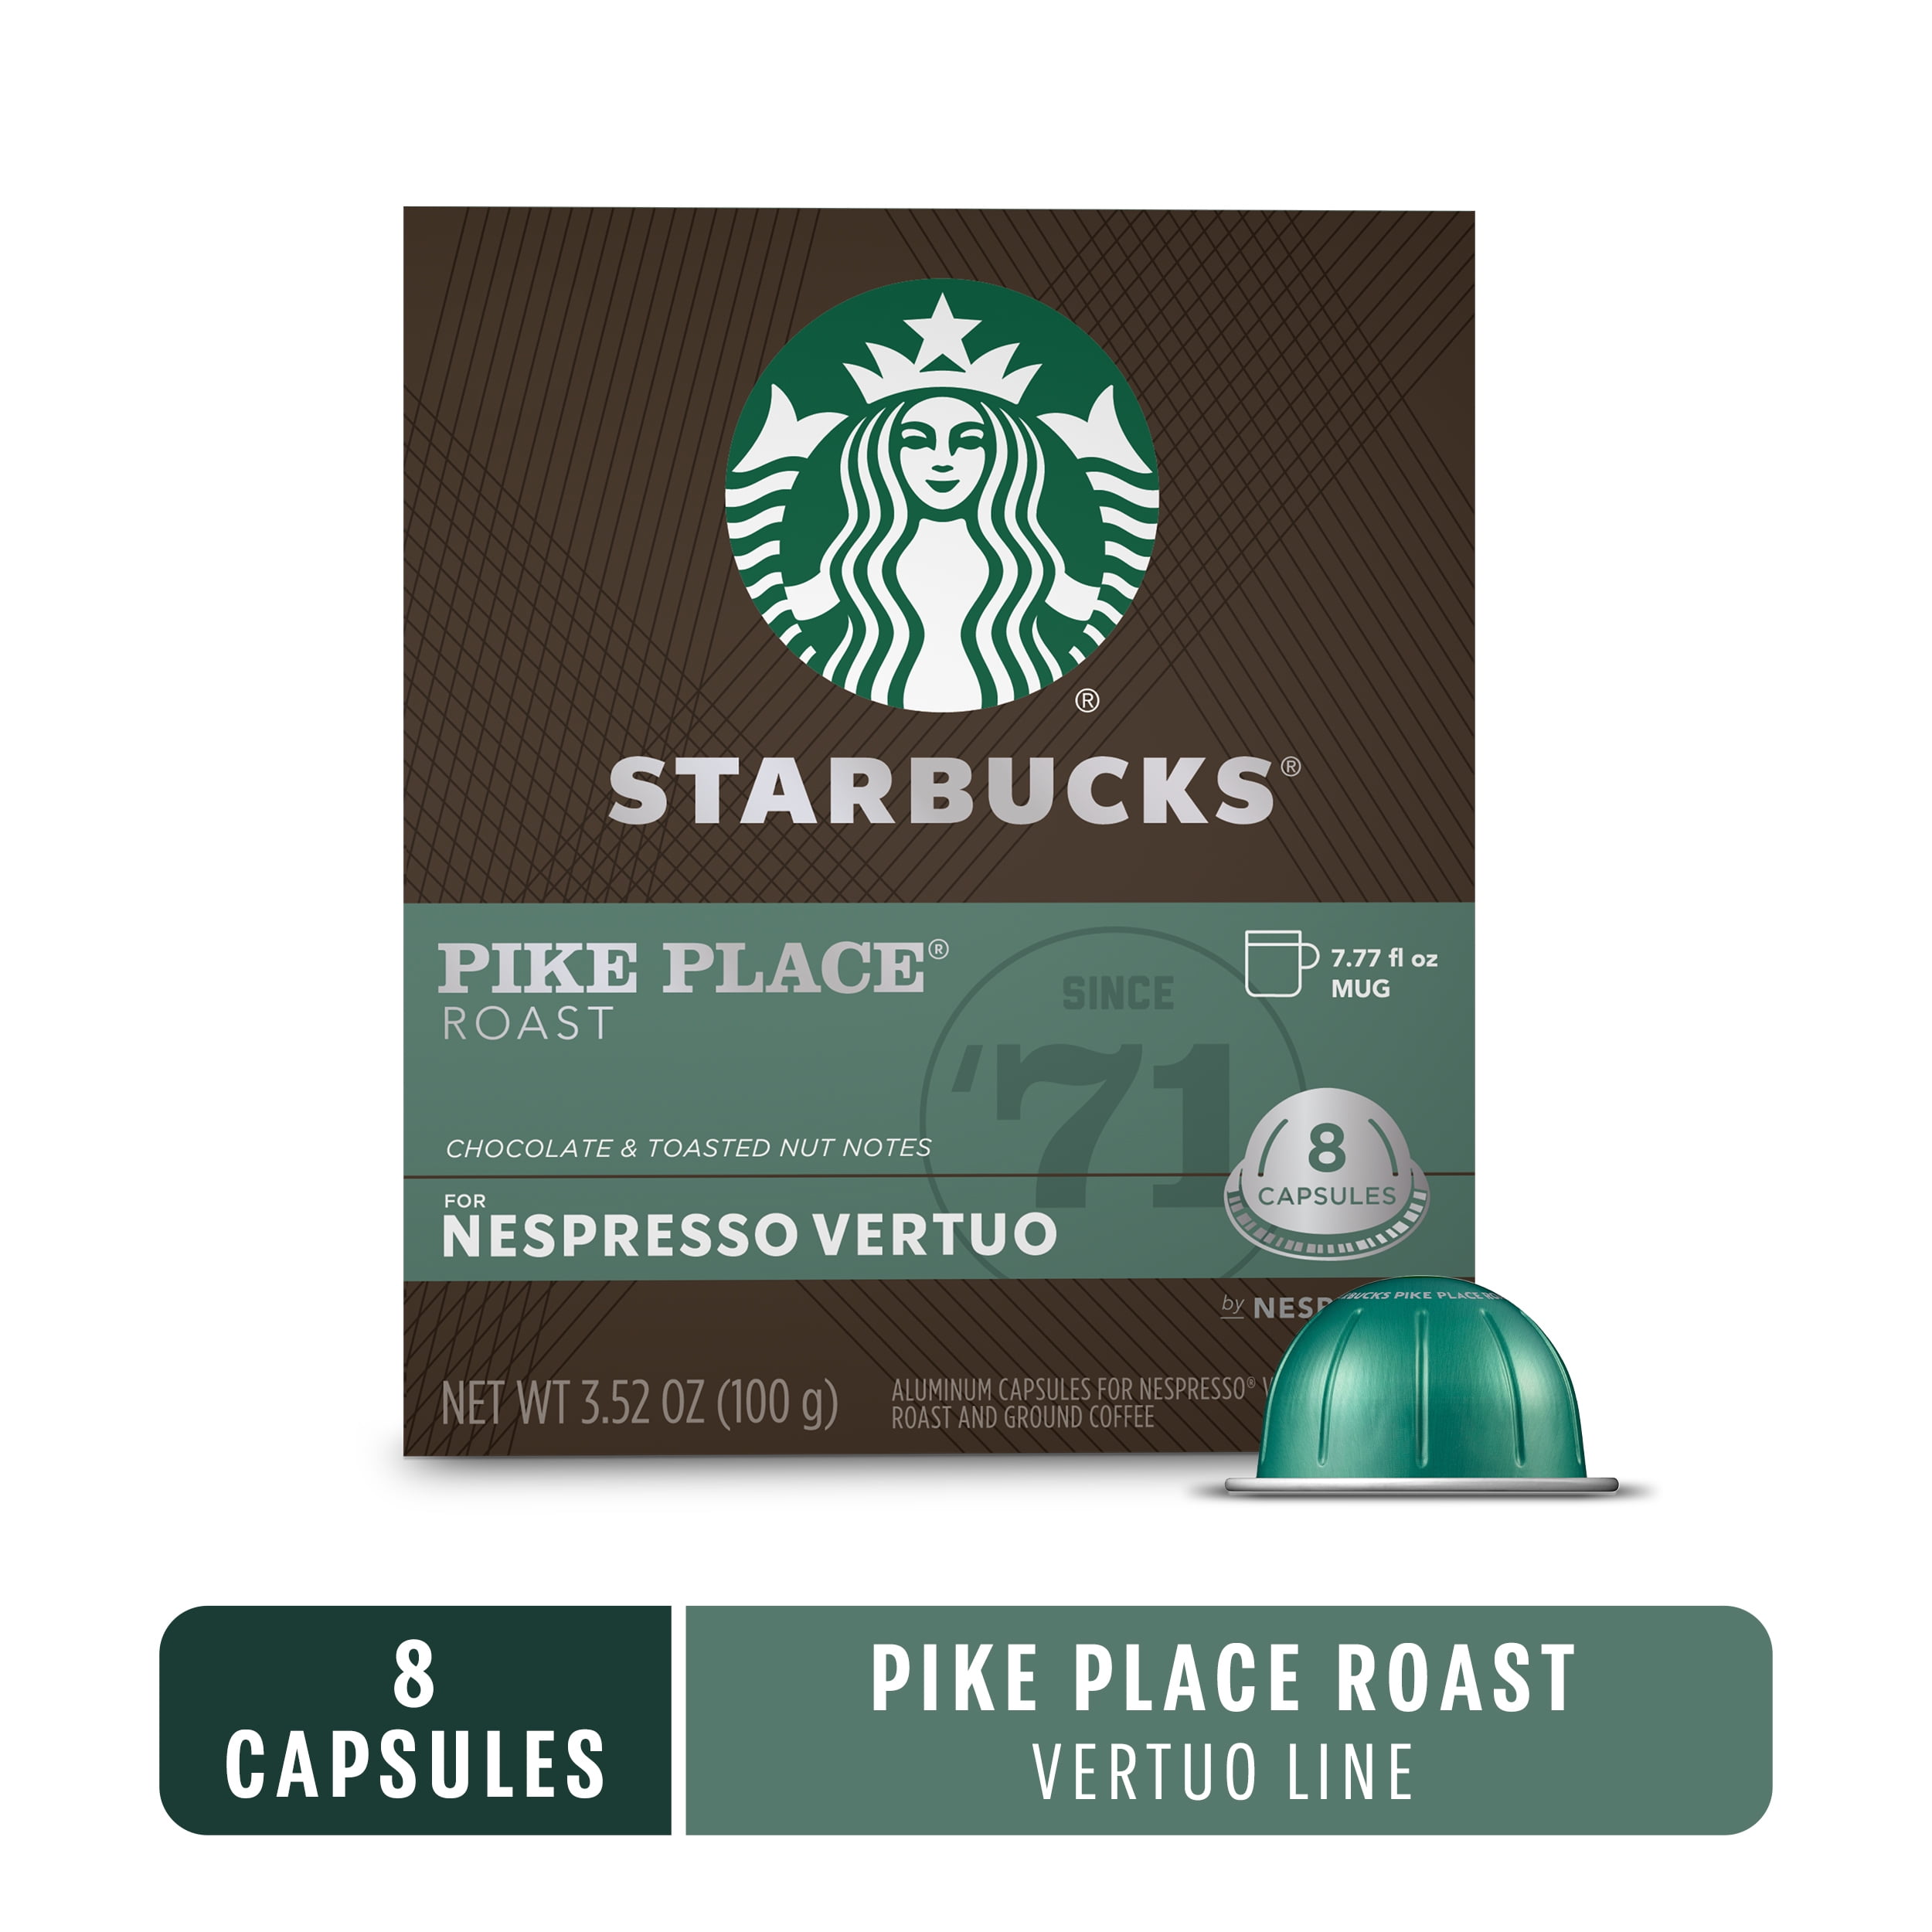 New Starbucks pods by Nespresso. Looks good, anyone tried it yet? : r/ nespresso